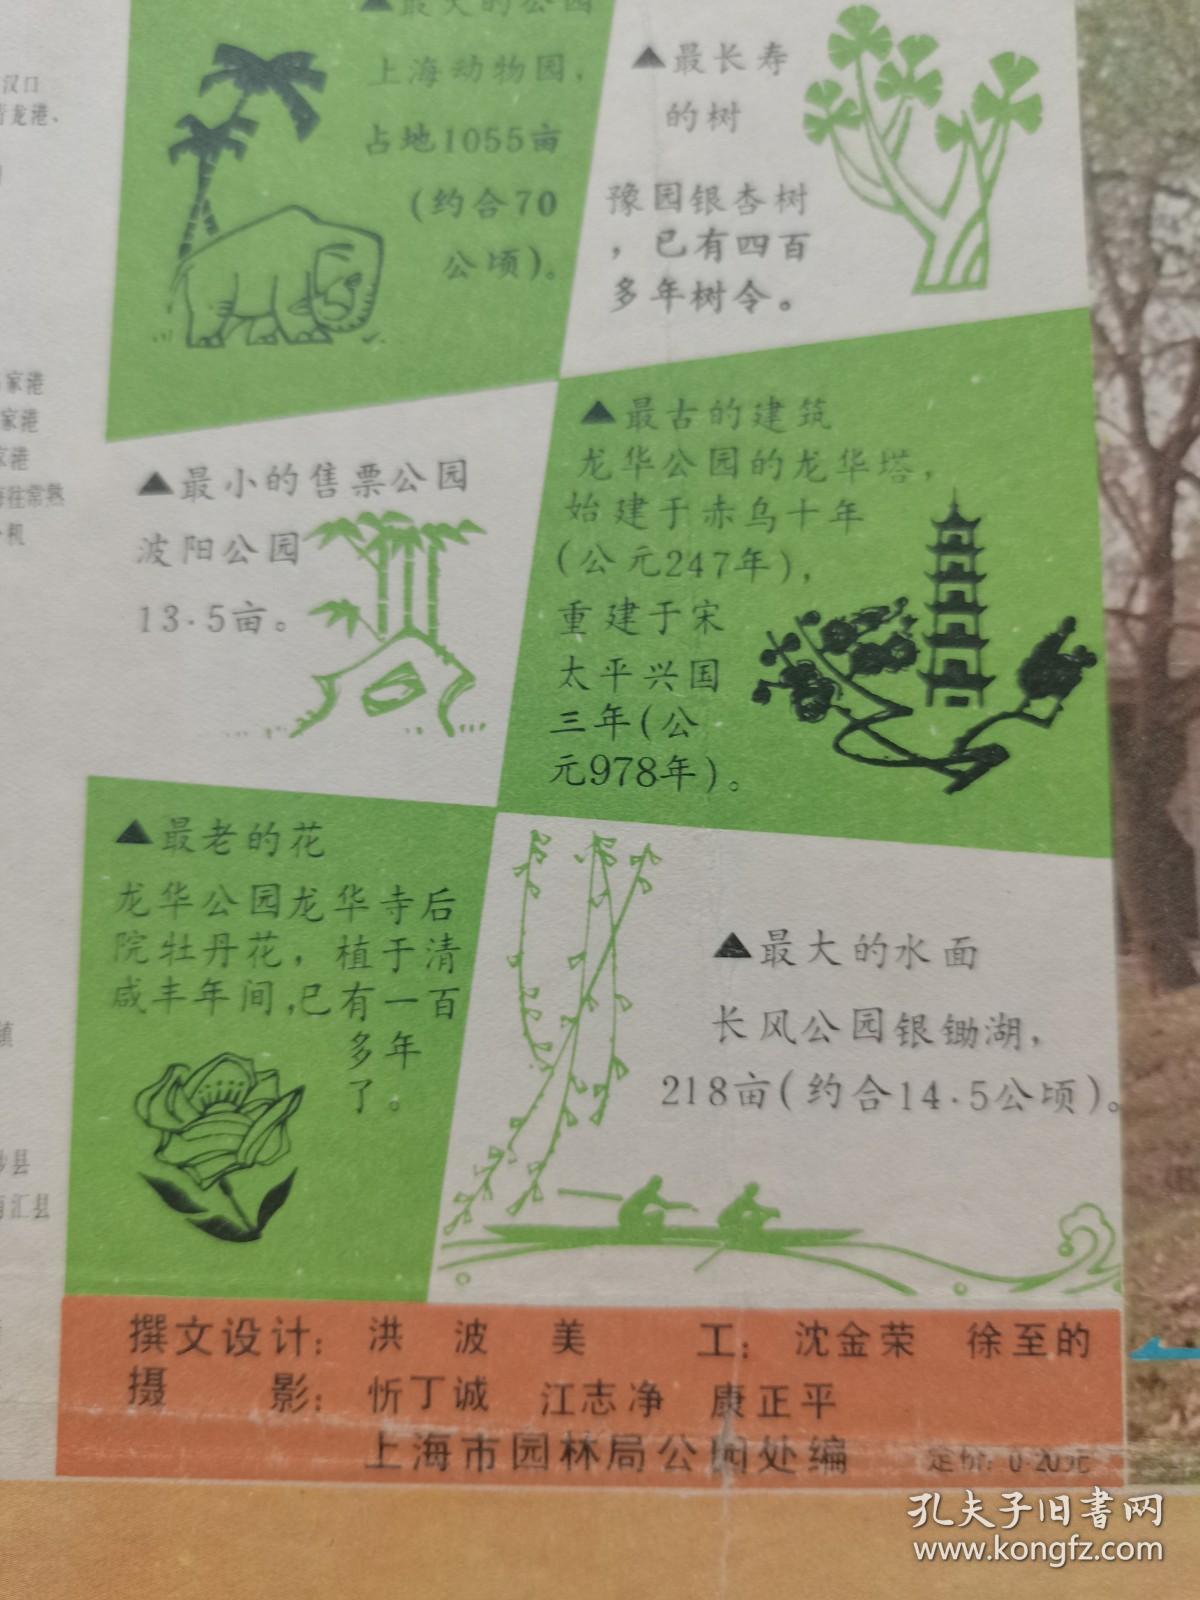 4开上海园林导游图